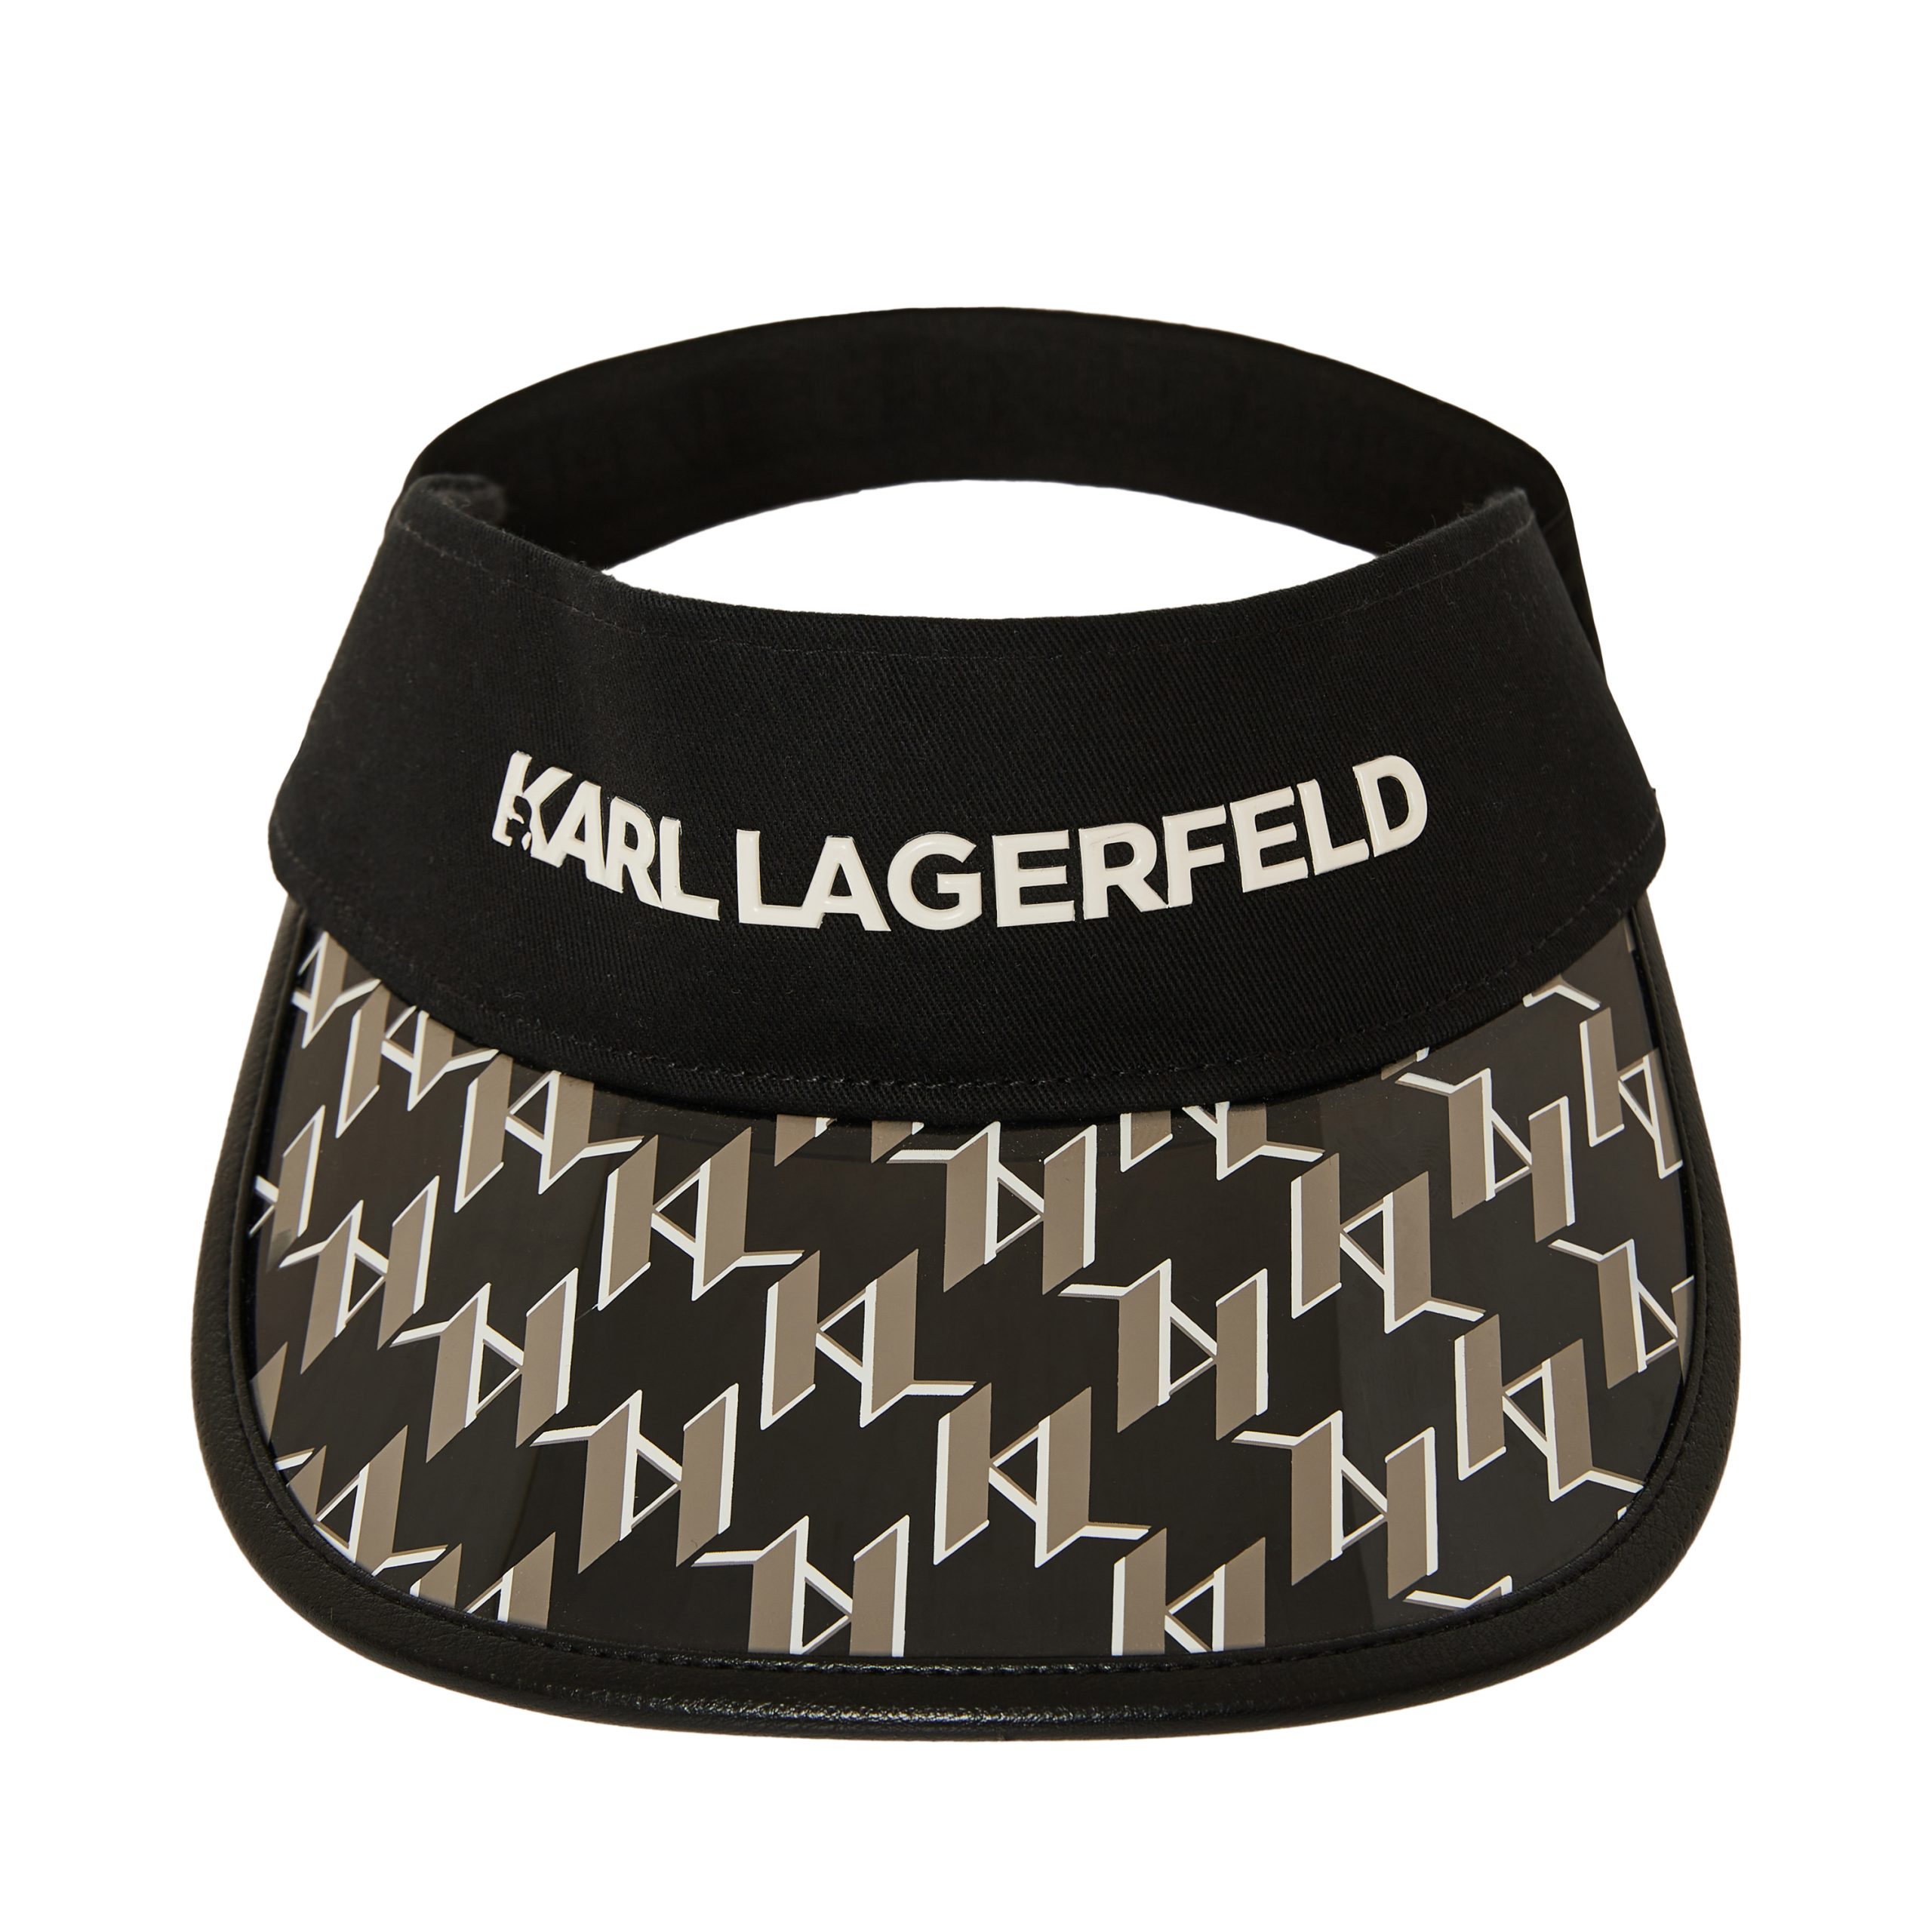 Karl Lagerfeld… is back!